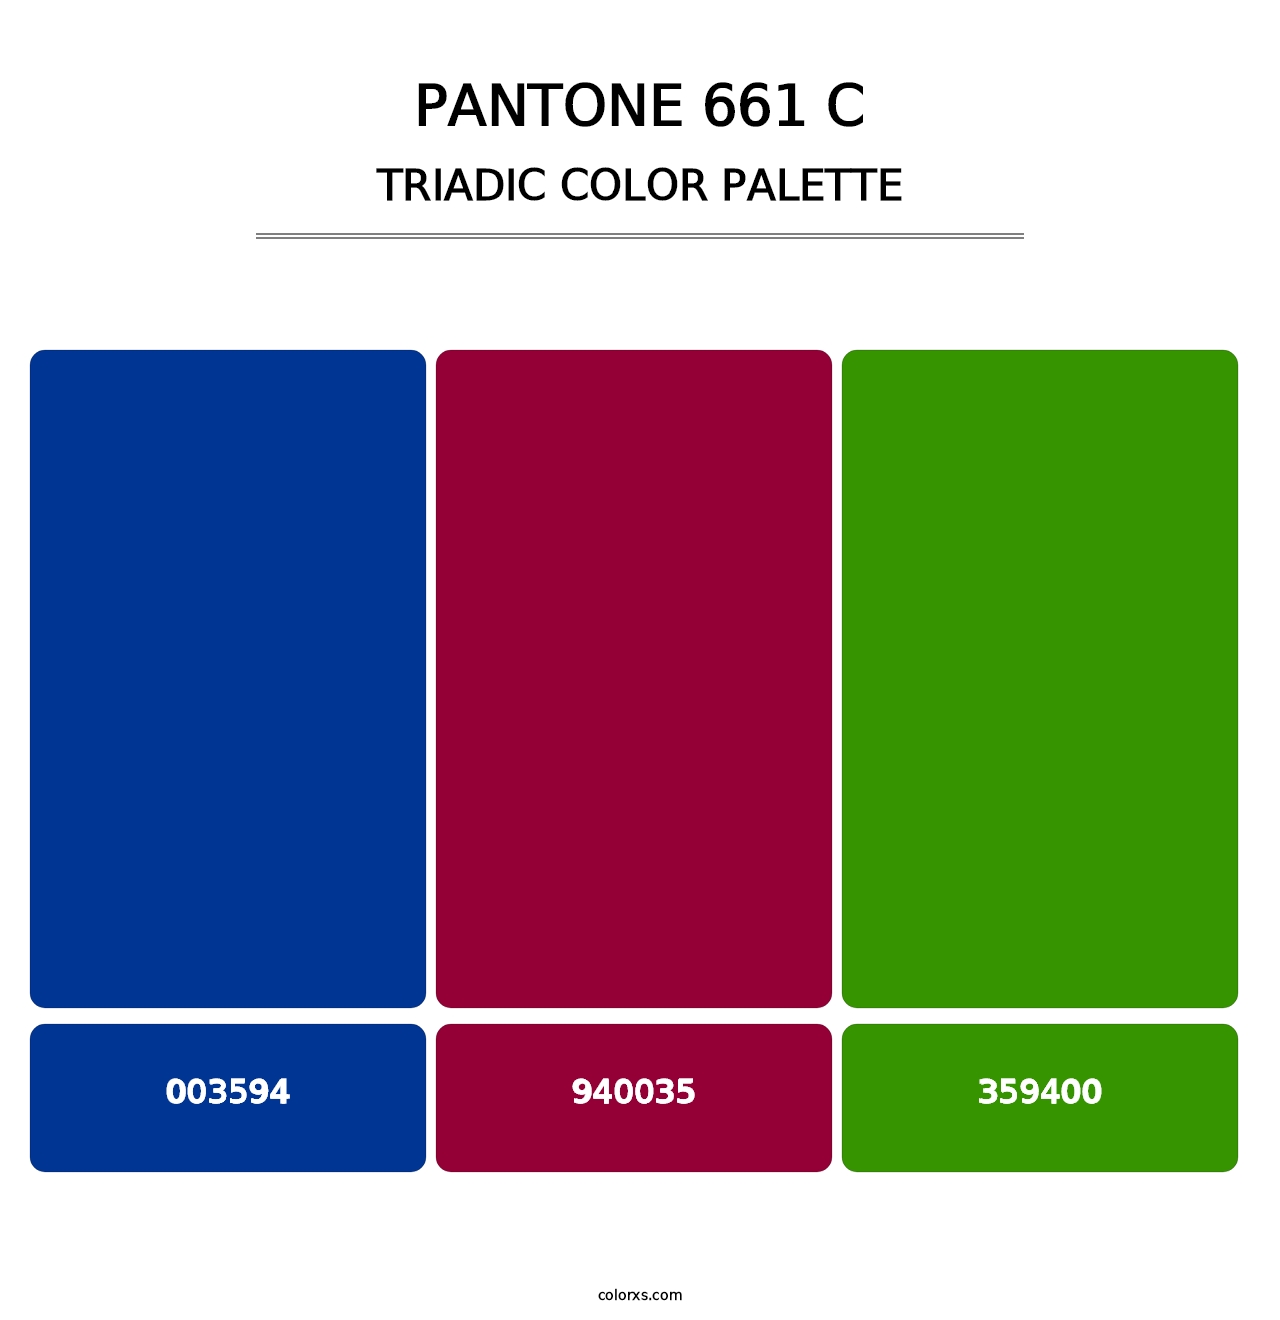 PANTONE 661 C - Triadic Color Palette